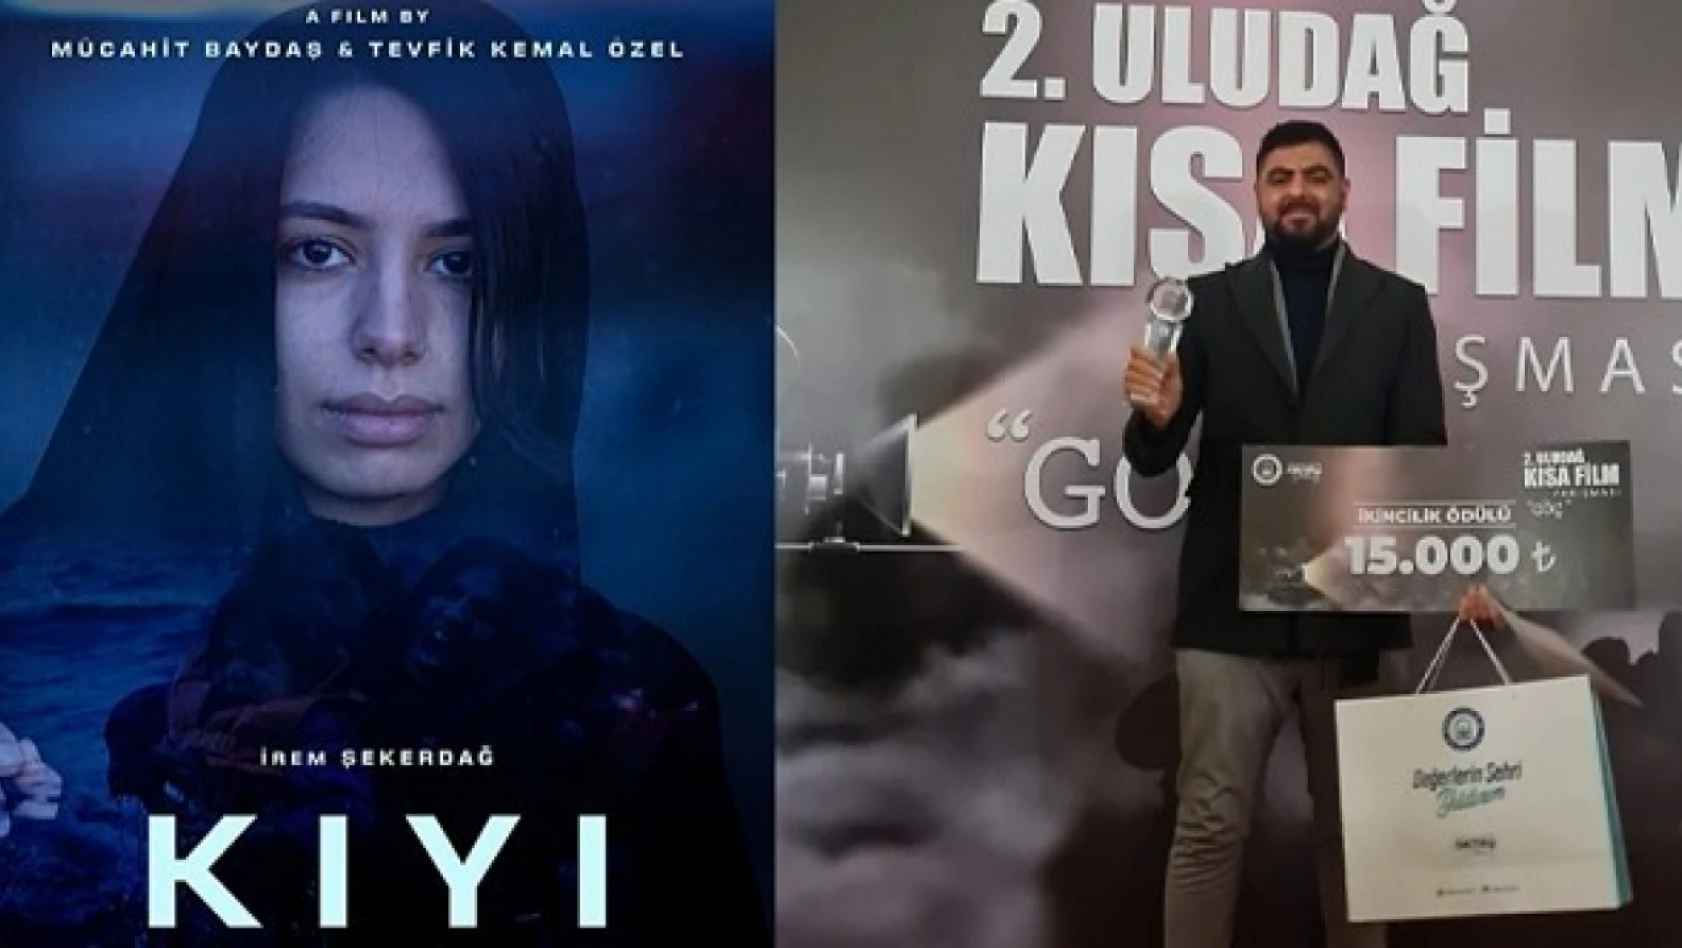 'KIYI' isimli kısa film, ikinci ödülünü aldı